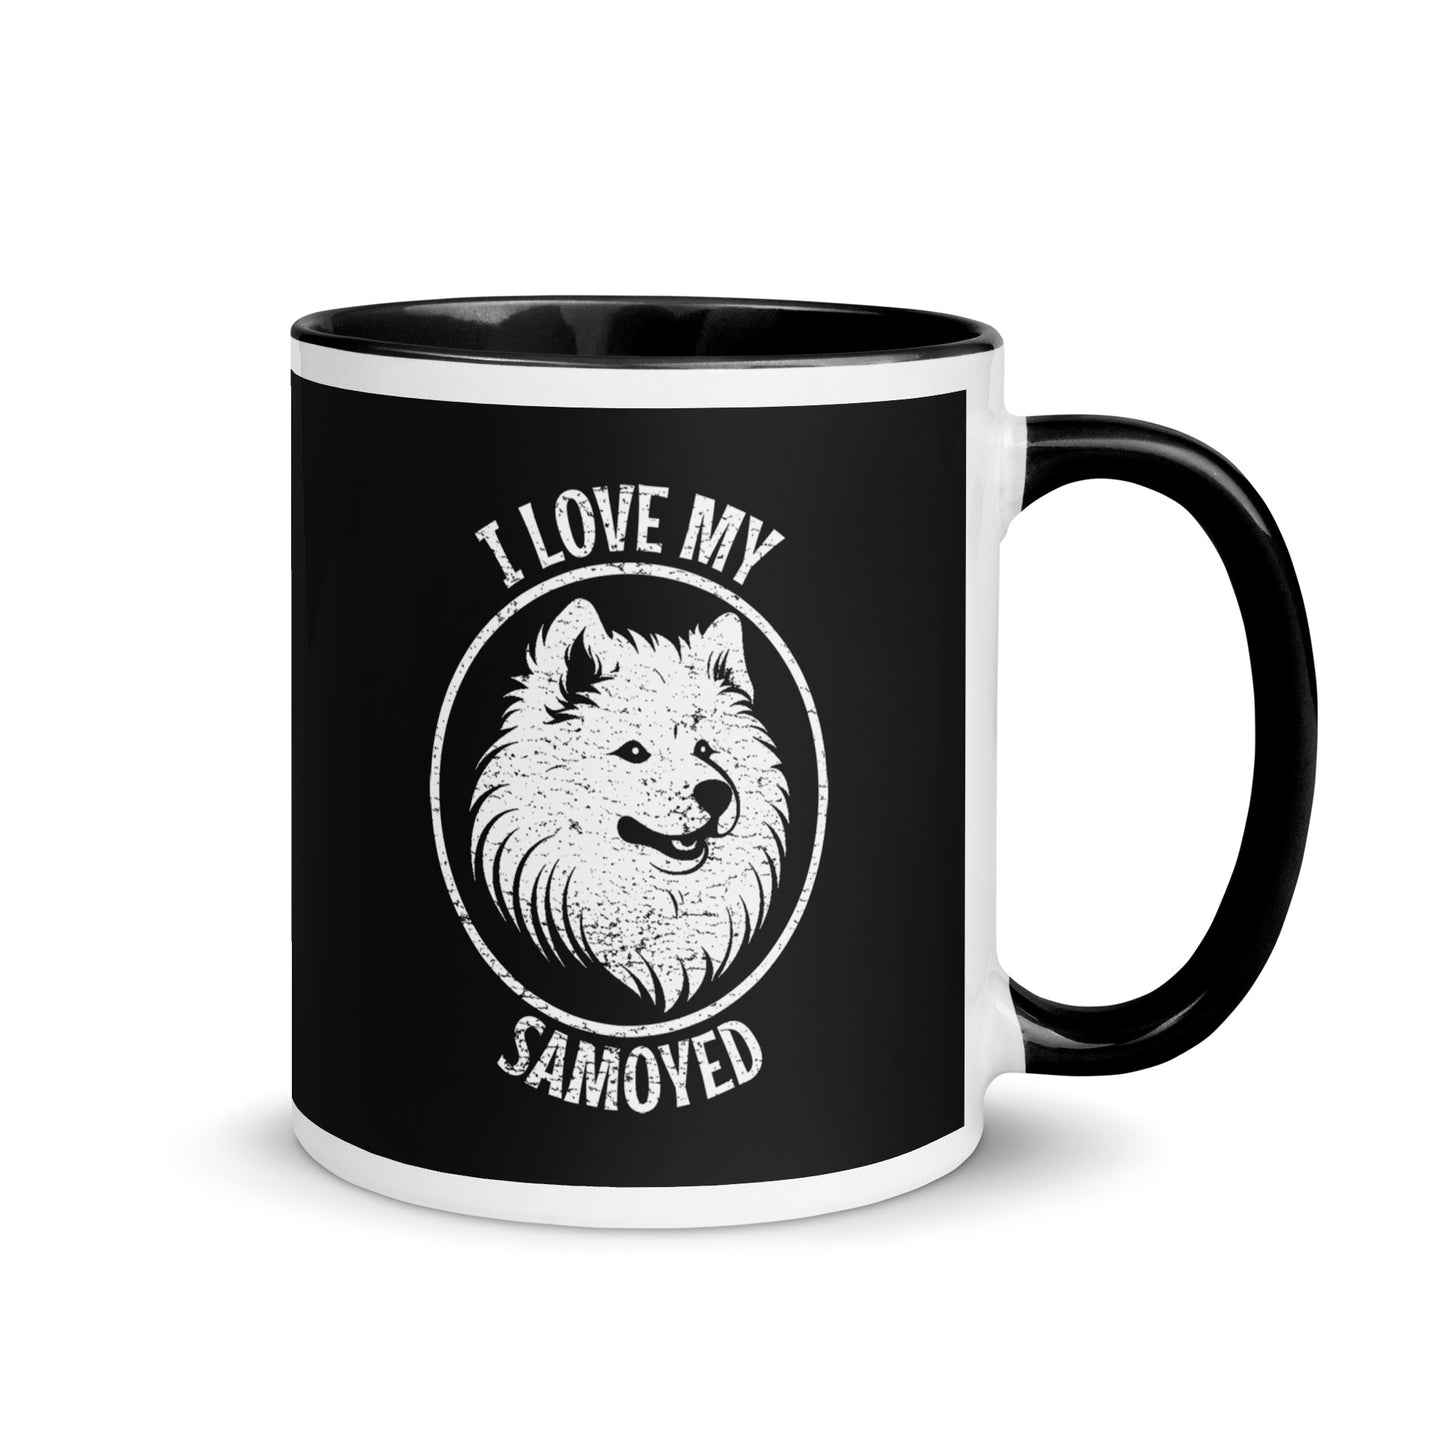 Samoyed Mug, Samoyed gift, gift for dog mom, custom dog gift, dog owner gift, pet memorial gift